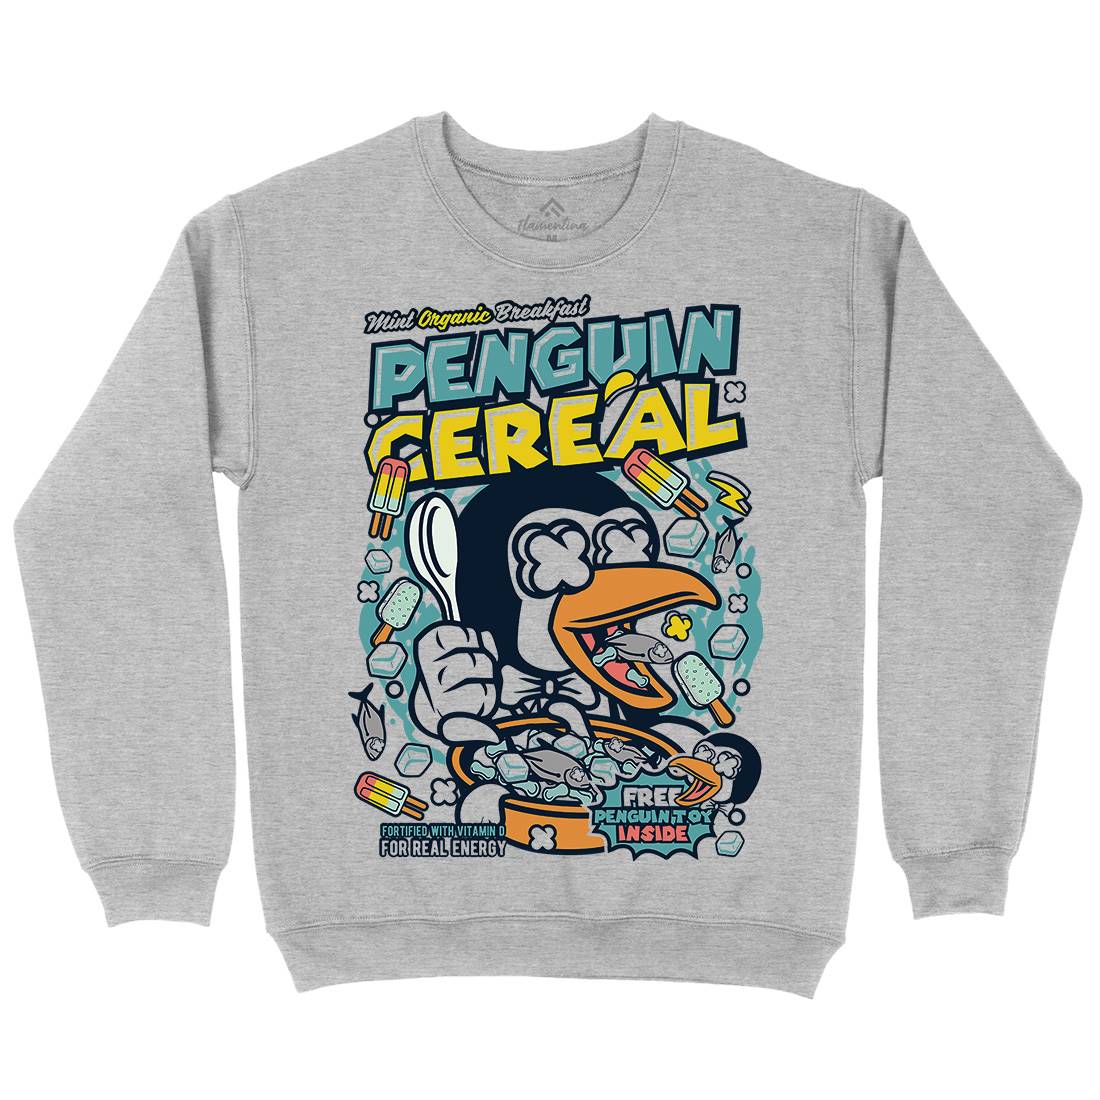 Penguin Cereal Box Kids Crew Neck Sweatshirt Food C602